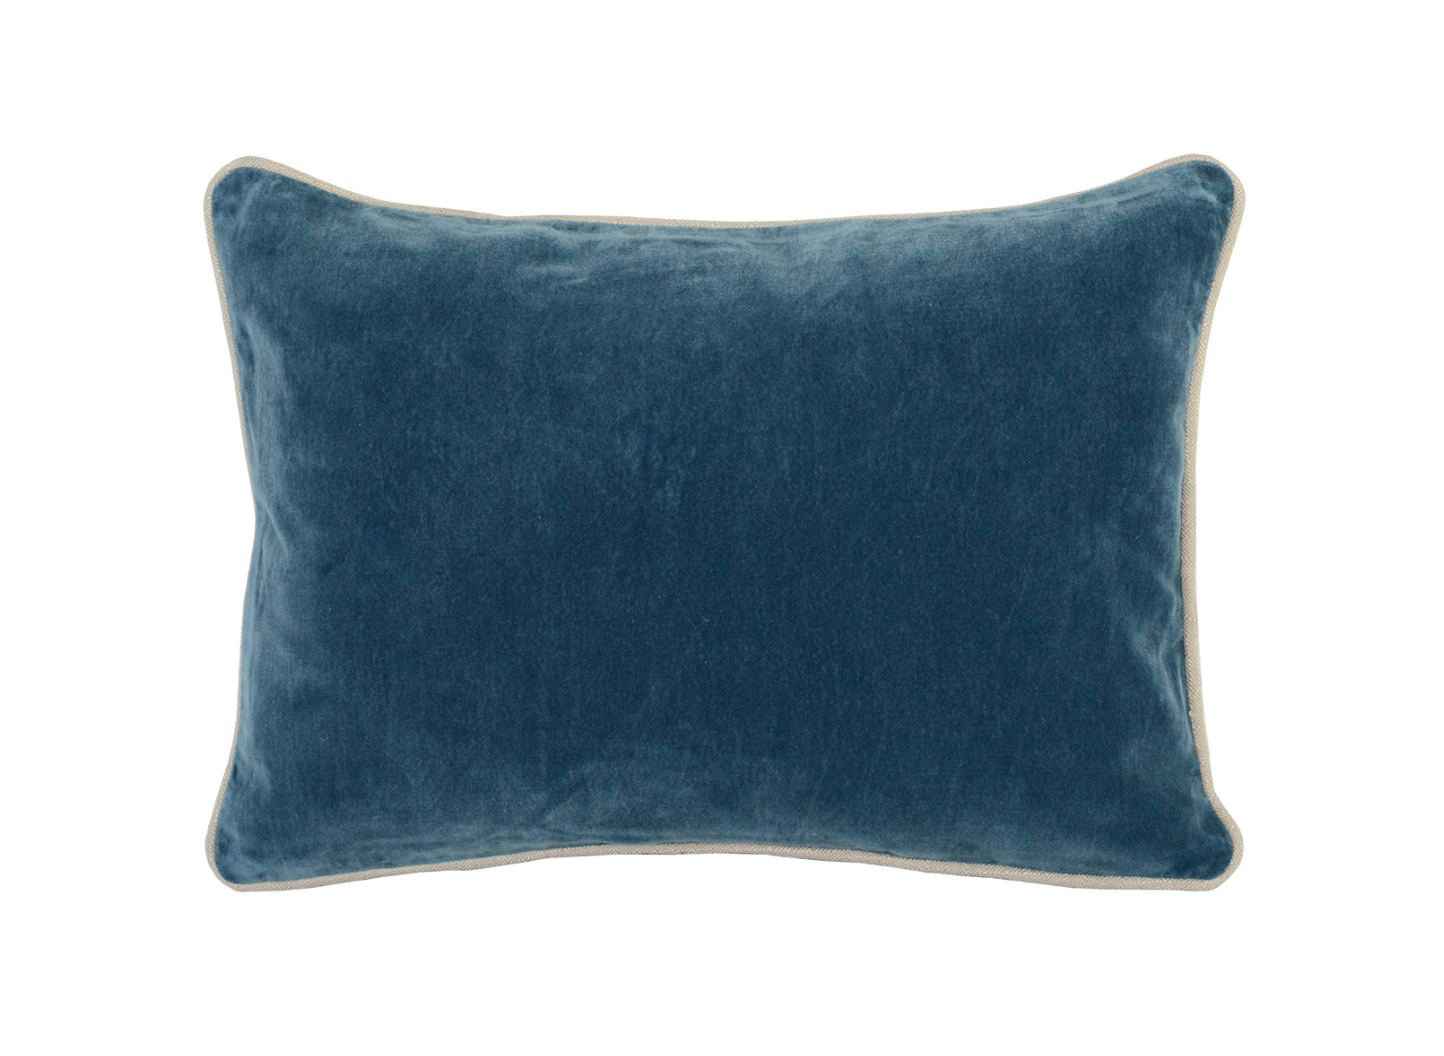 14x20 Marine Velvet Pillow